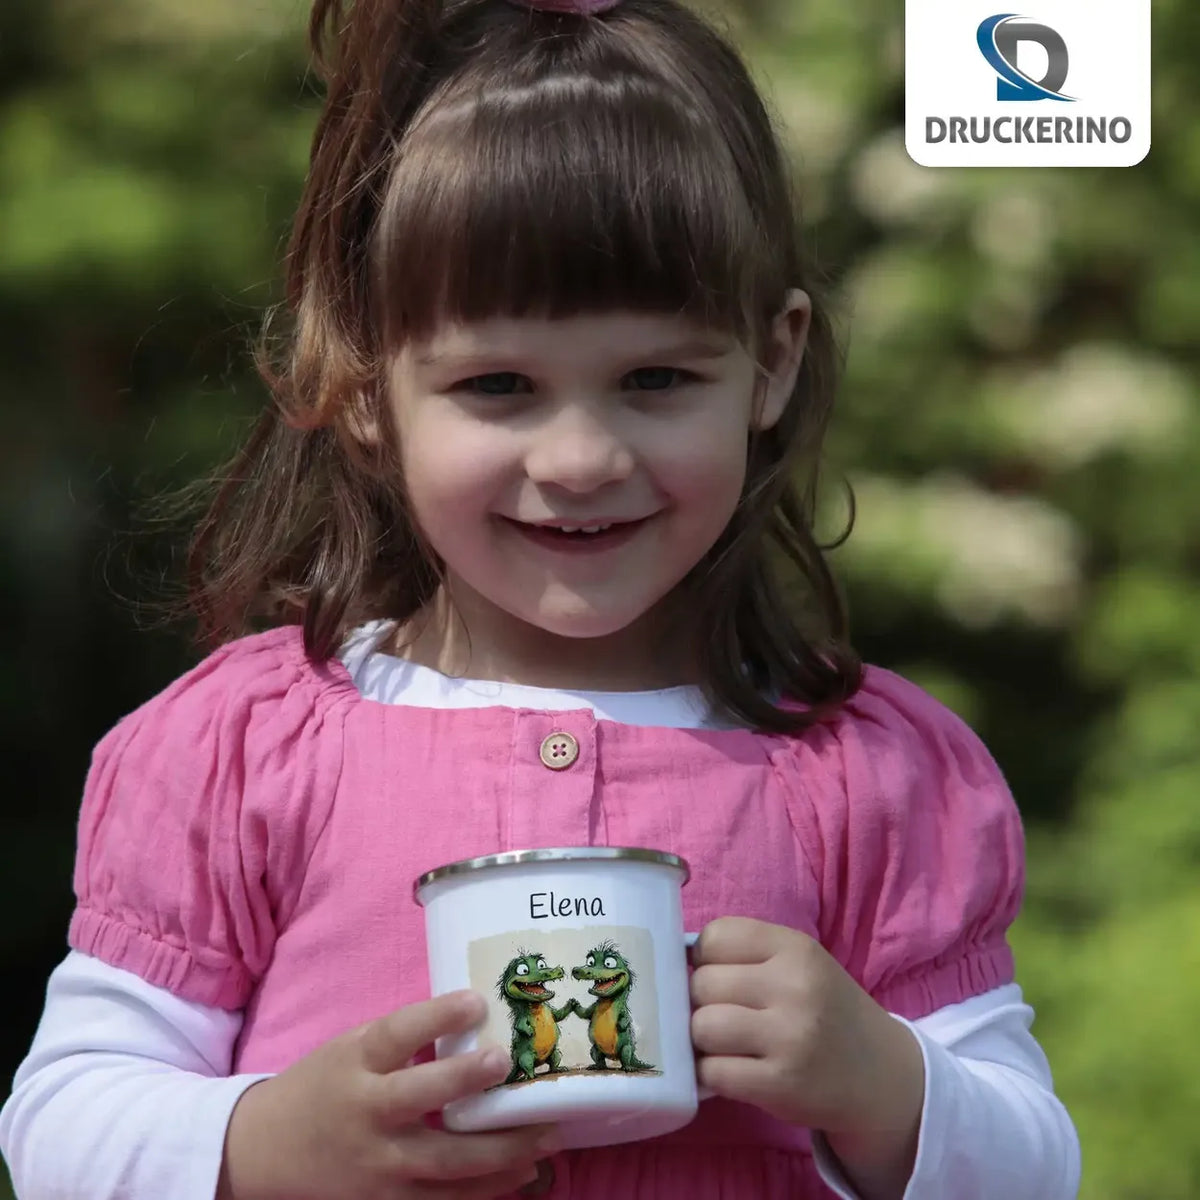 Zauberdrachenfreunde Emaille Tasse für Kinder personalisiert Emailletasse Druckerino   